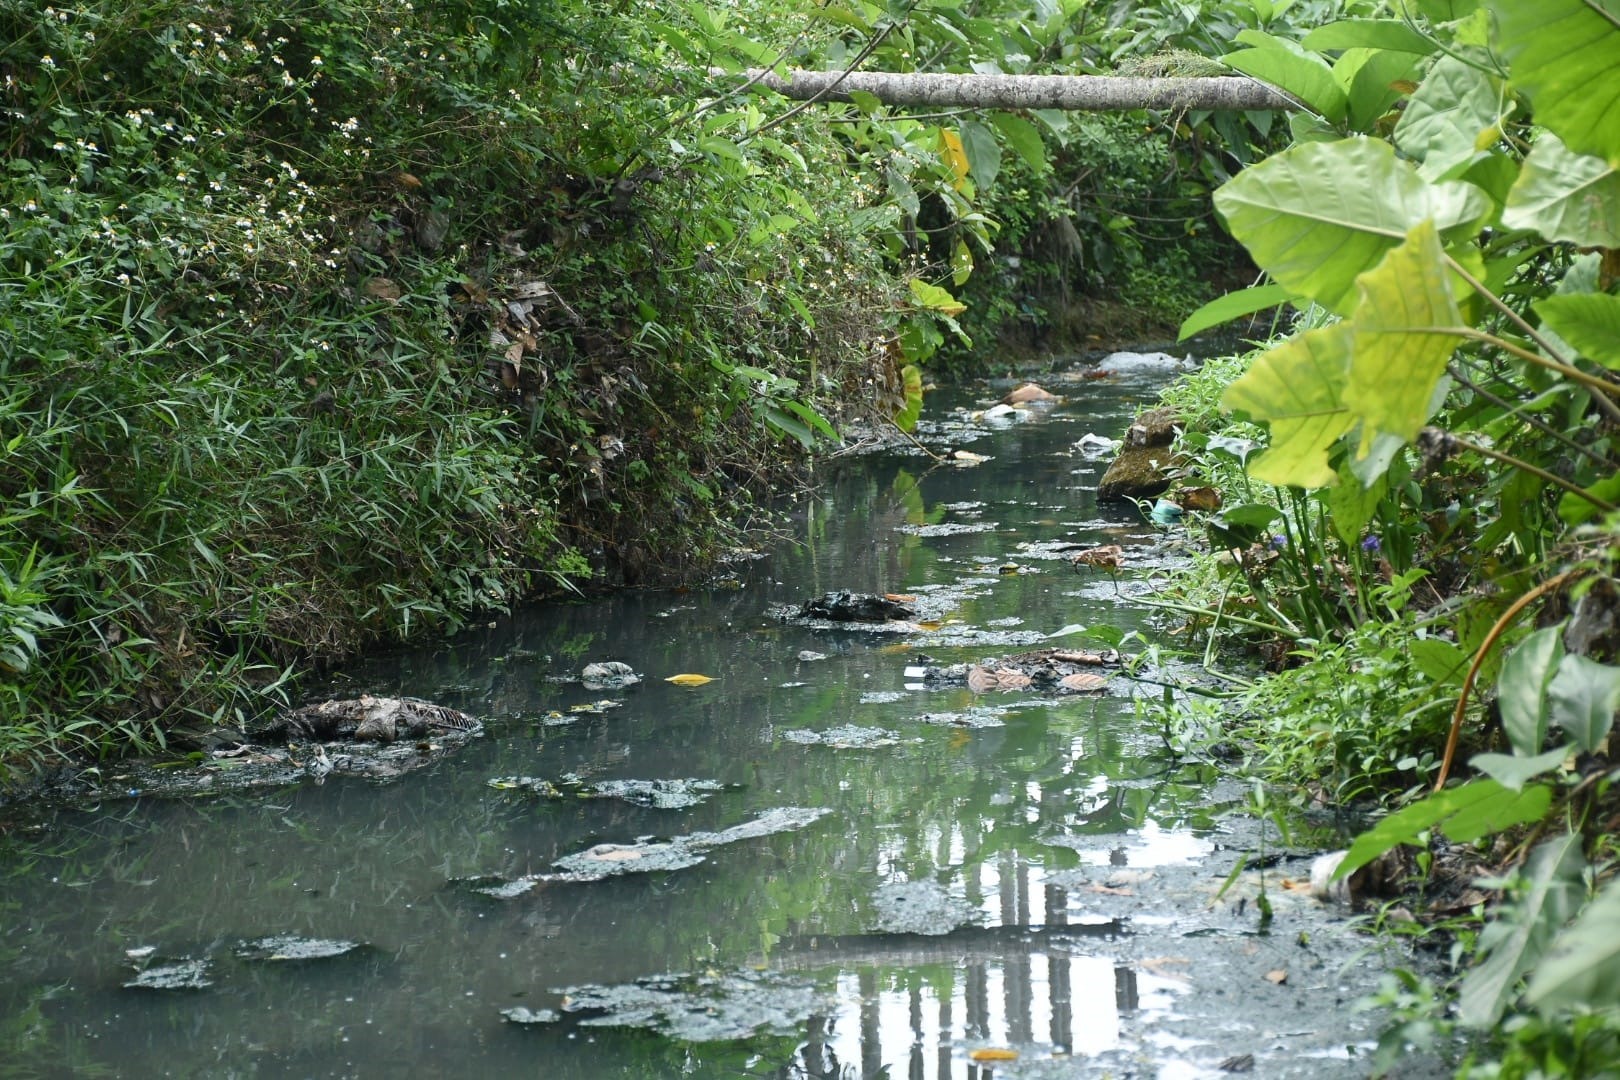 Đoạn kênh thoát nước thải có chiều dài khoảng 300m gây ô nhiễm môi trường, ảnh hưởng nghiêm trọng đến cuộc sống của hàng chục hộ dân. Người dân mong muốn đoạn kênh này được ngầm hóa để giảm ô nhiễm. Ảnh: Ngọc Viên